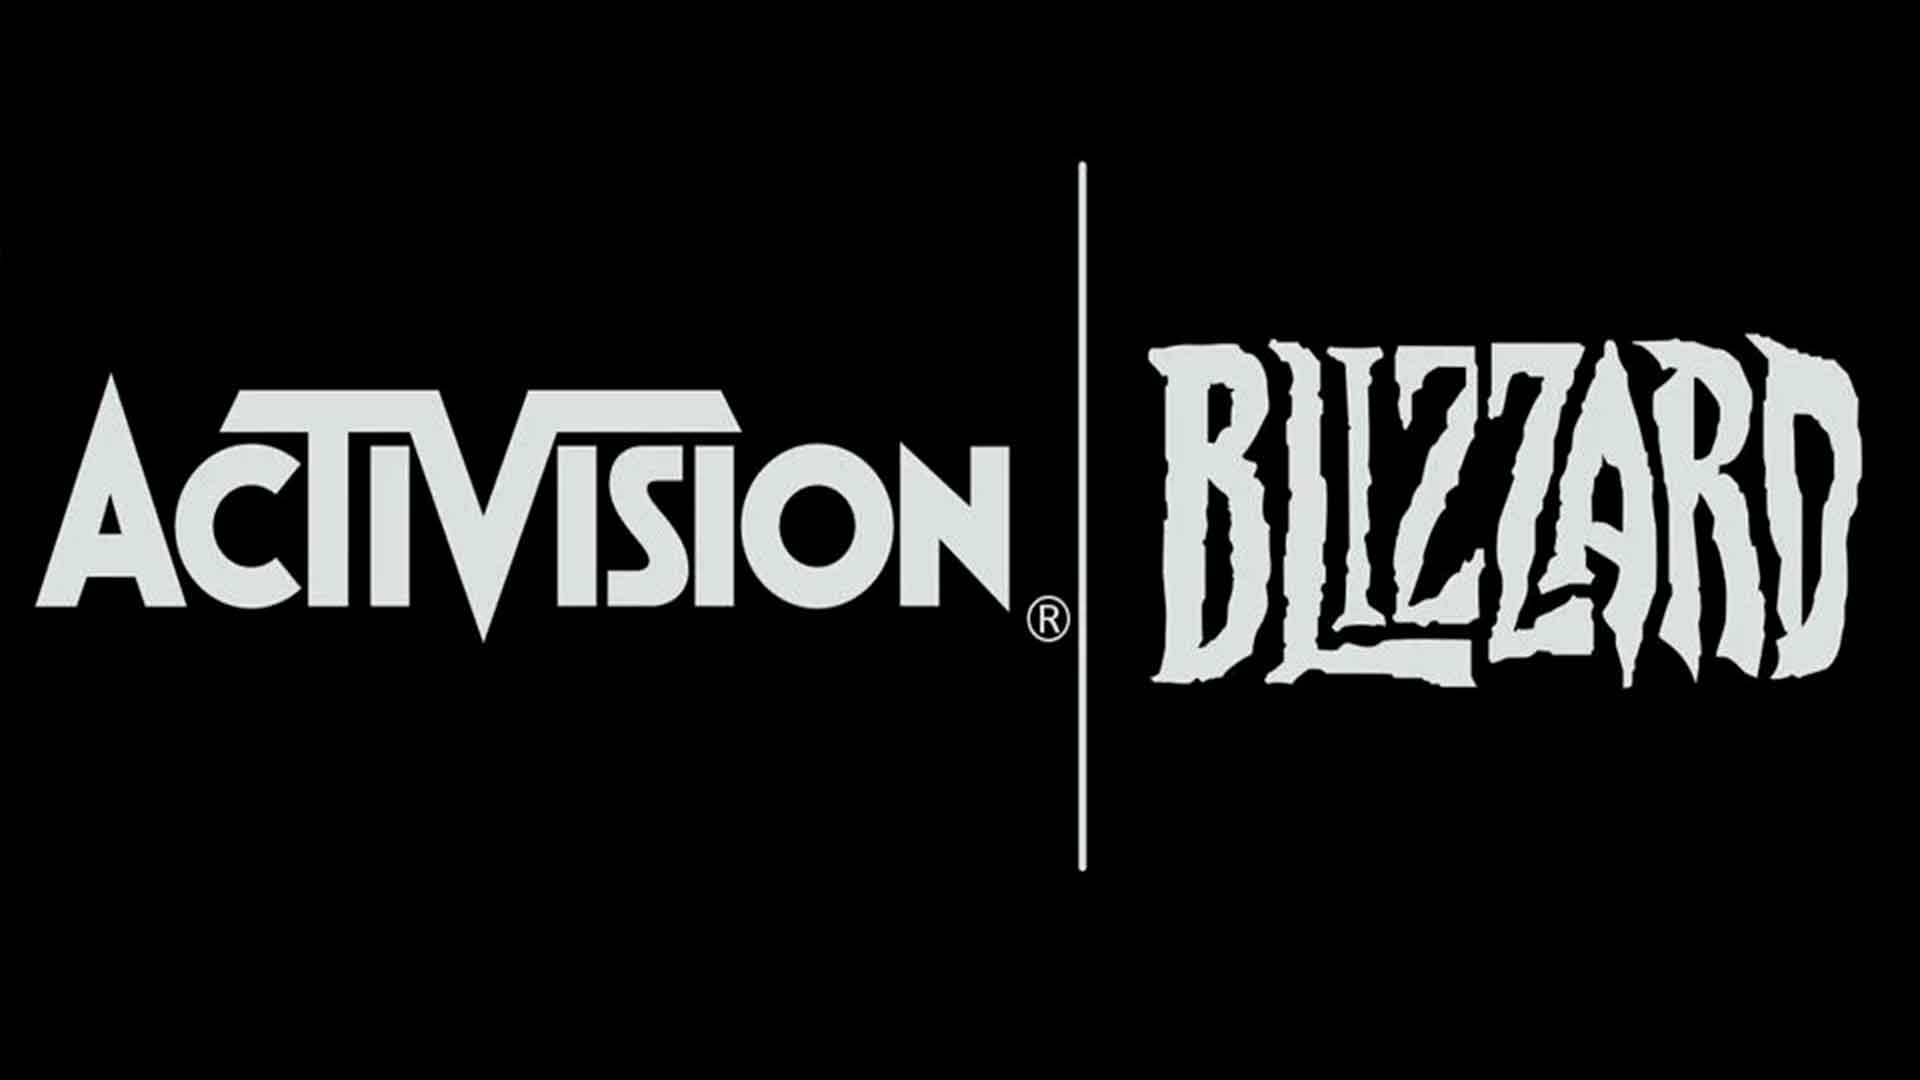 Juez aprueba acuerdo por acoso de $18millones de dólares de Activision Blizzard, GamersRD